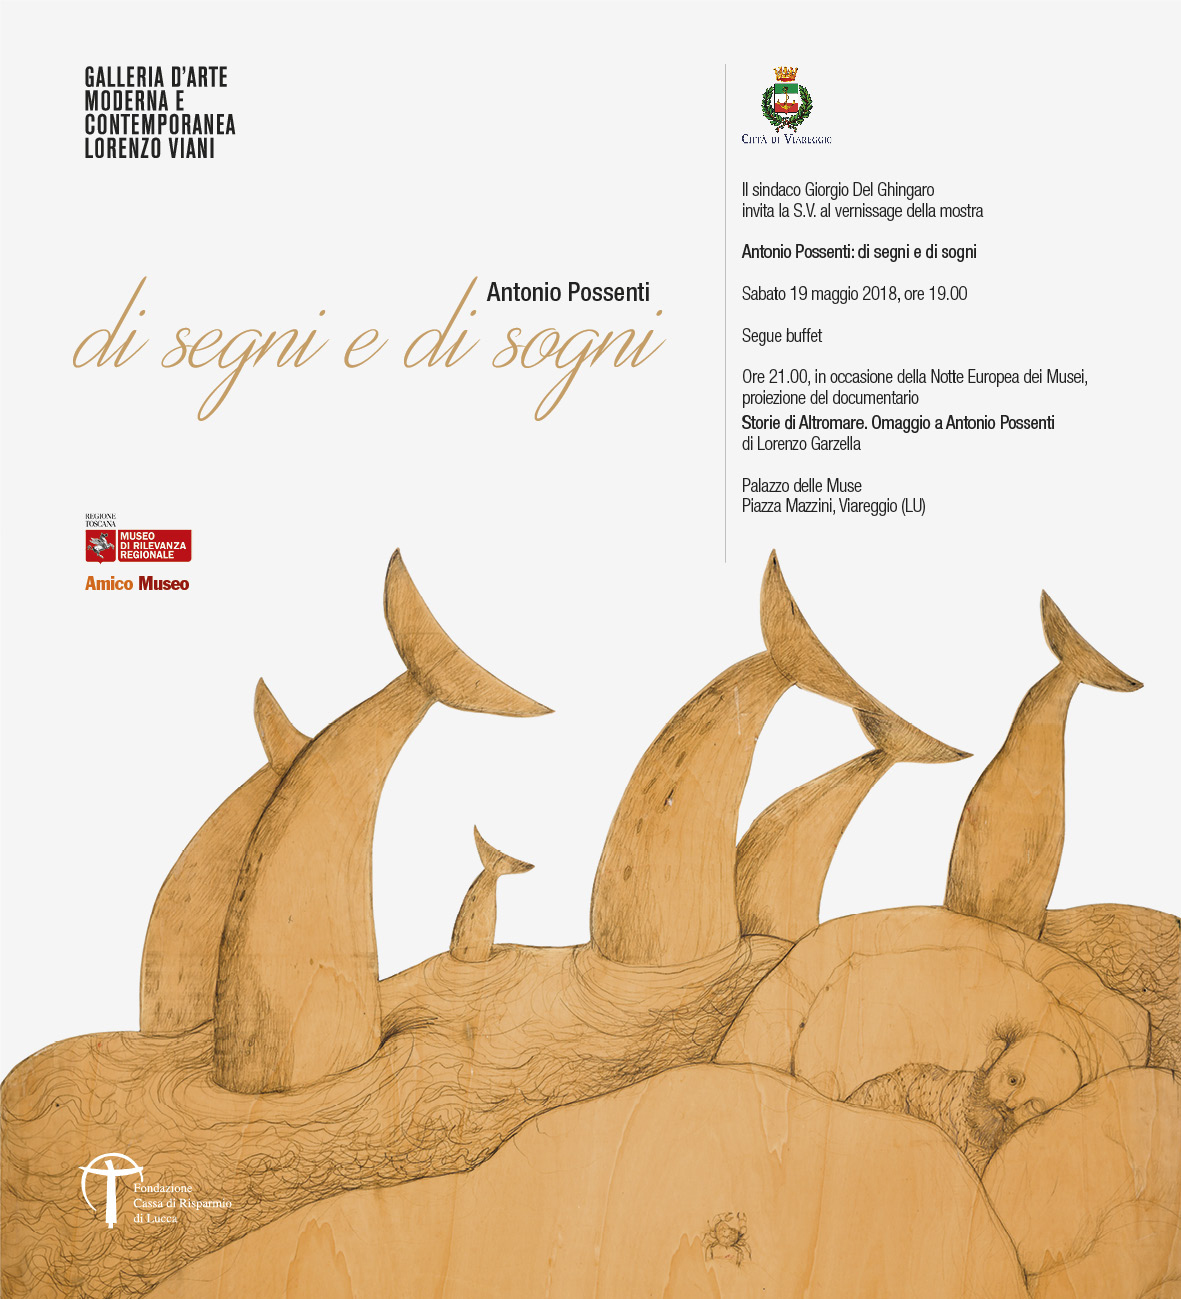 GAMC - Galleria di Arte Moderna - Mostra : Inaugurazione Mostra - Antonio Possenti di segni e di sogni, immagine